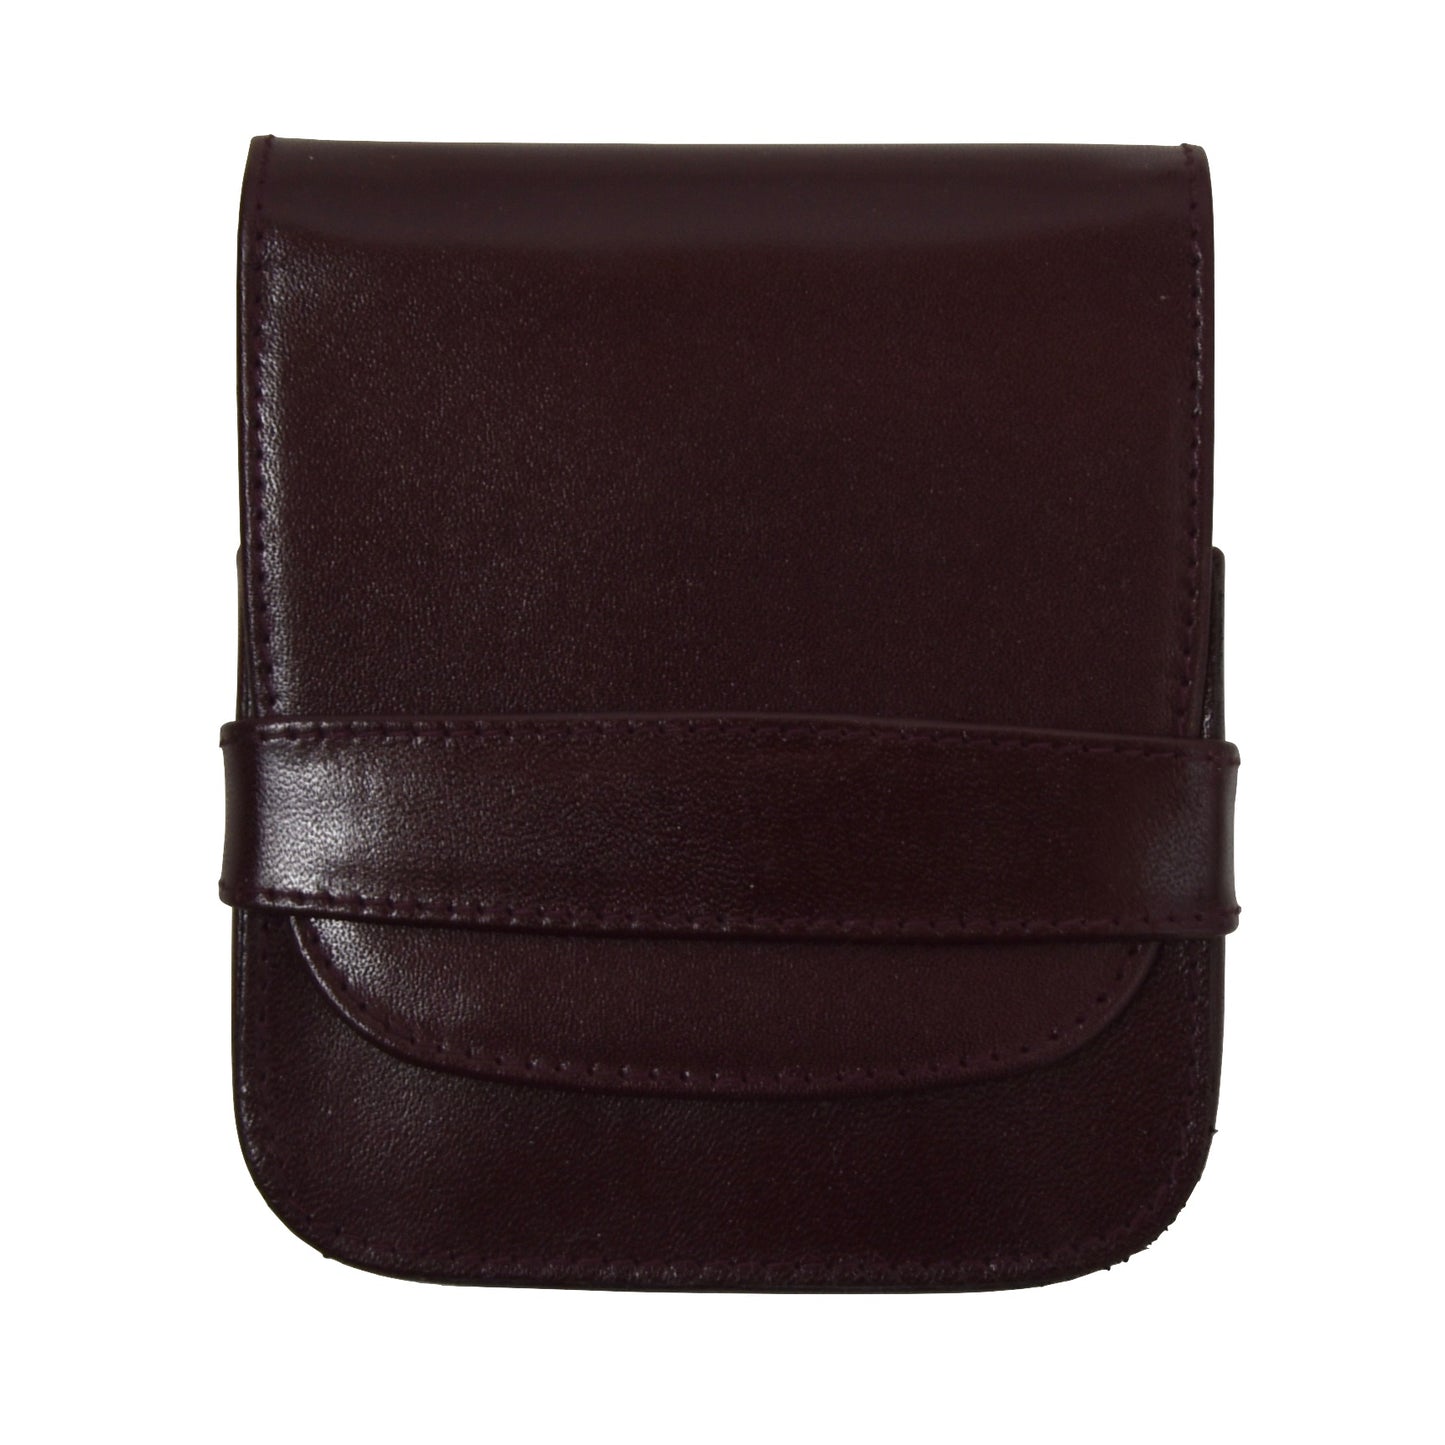 New Solingen 6 Piece Manicure Set + Leather Case